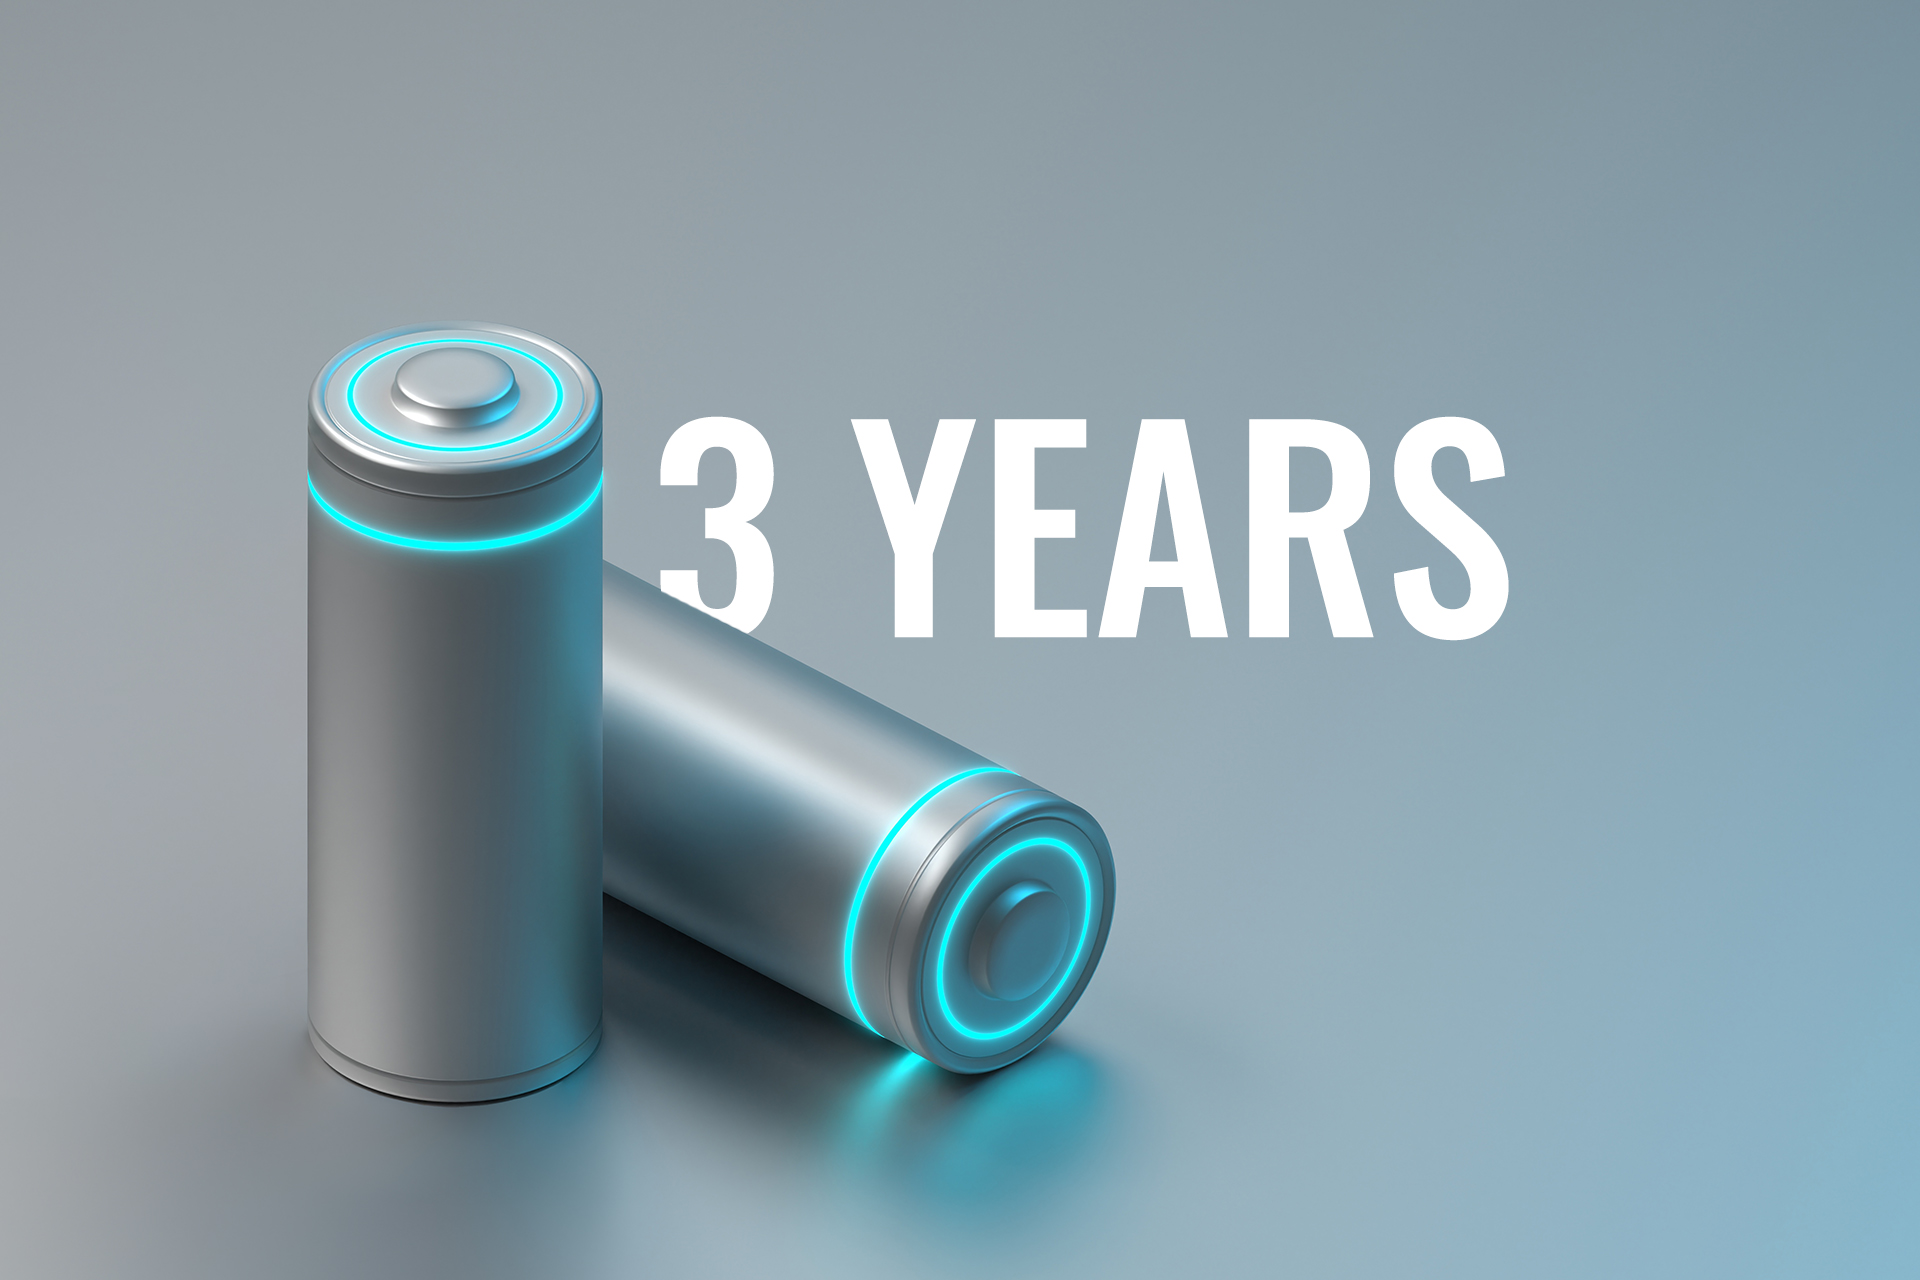 Срок службы батареи до 3 лет*